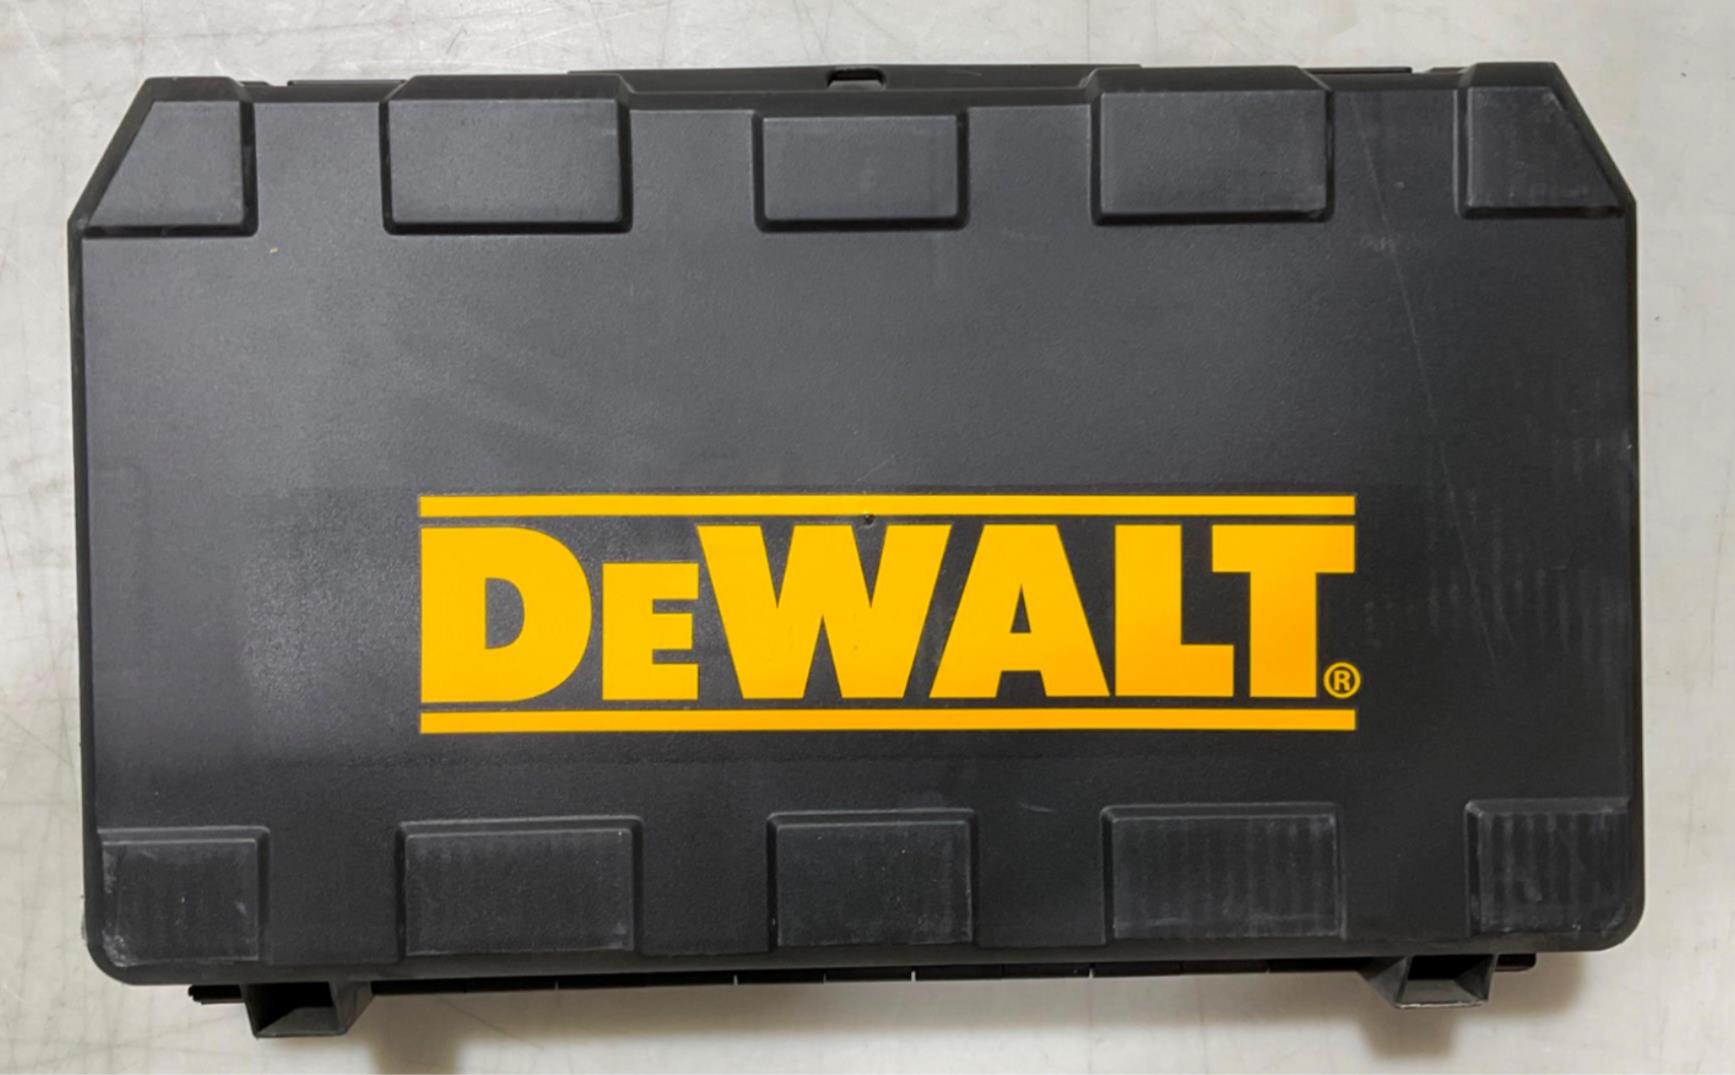 DeWalt DW505K 1/2" HD Dual Speed Range Hammerdrill Kit #31